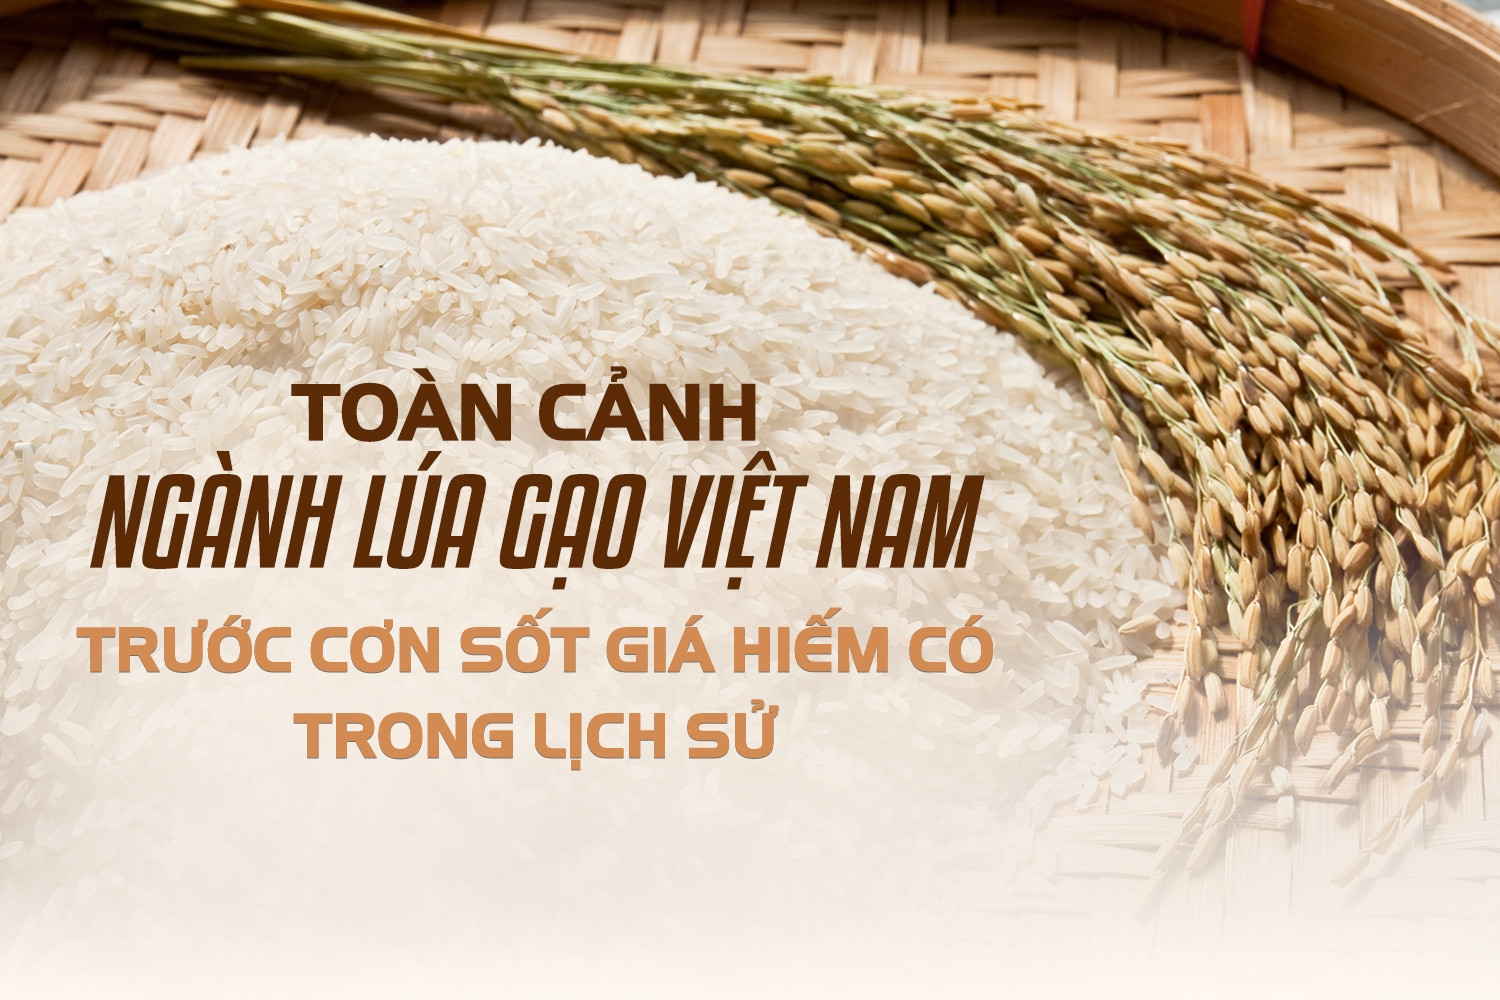 Toàn cảnh ngành lúa gạo Việt Nam trước cơn sốt giá hiếm có trong lịch sử